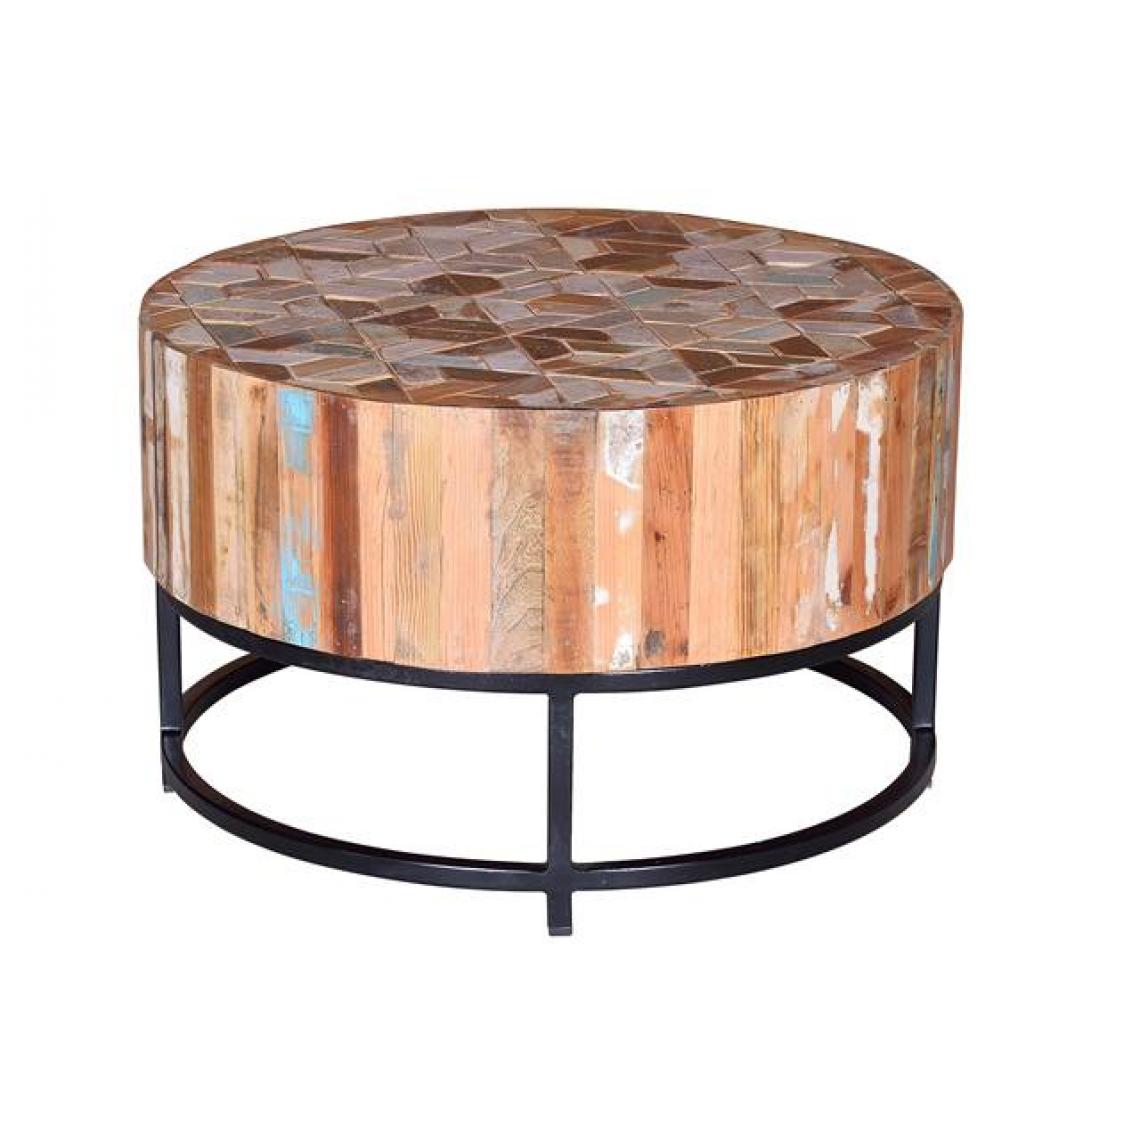 Pegane - Table basse en bois recyclé multicolore - diamètre 70 x hauteur 42 cm - Tables basses